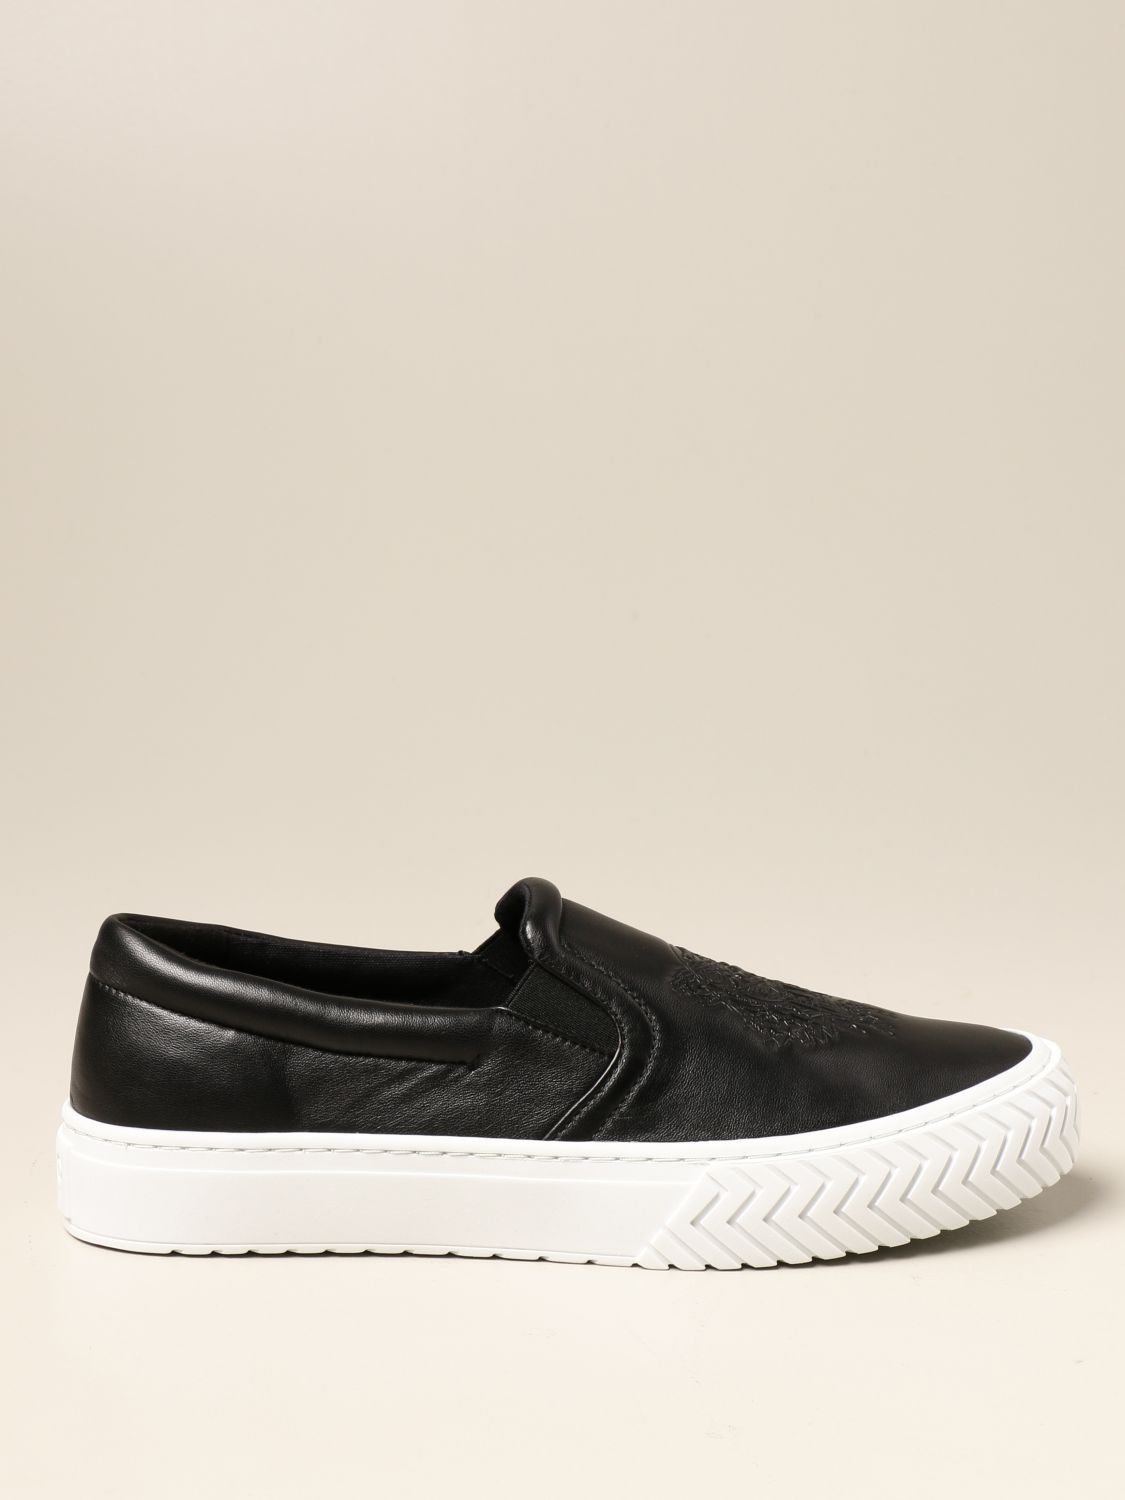 kenzo shoes black